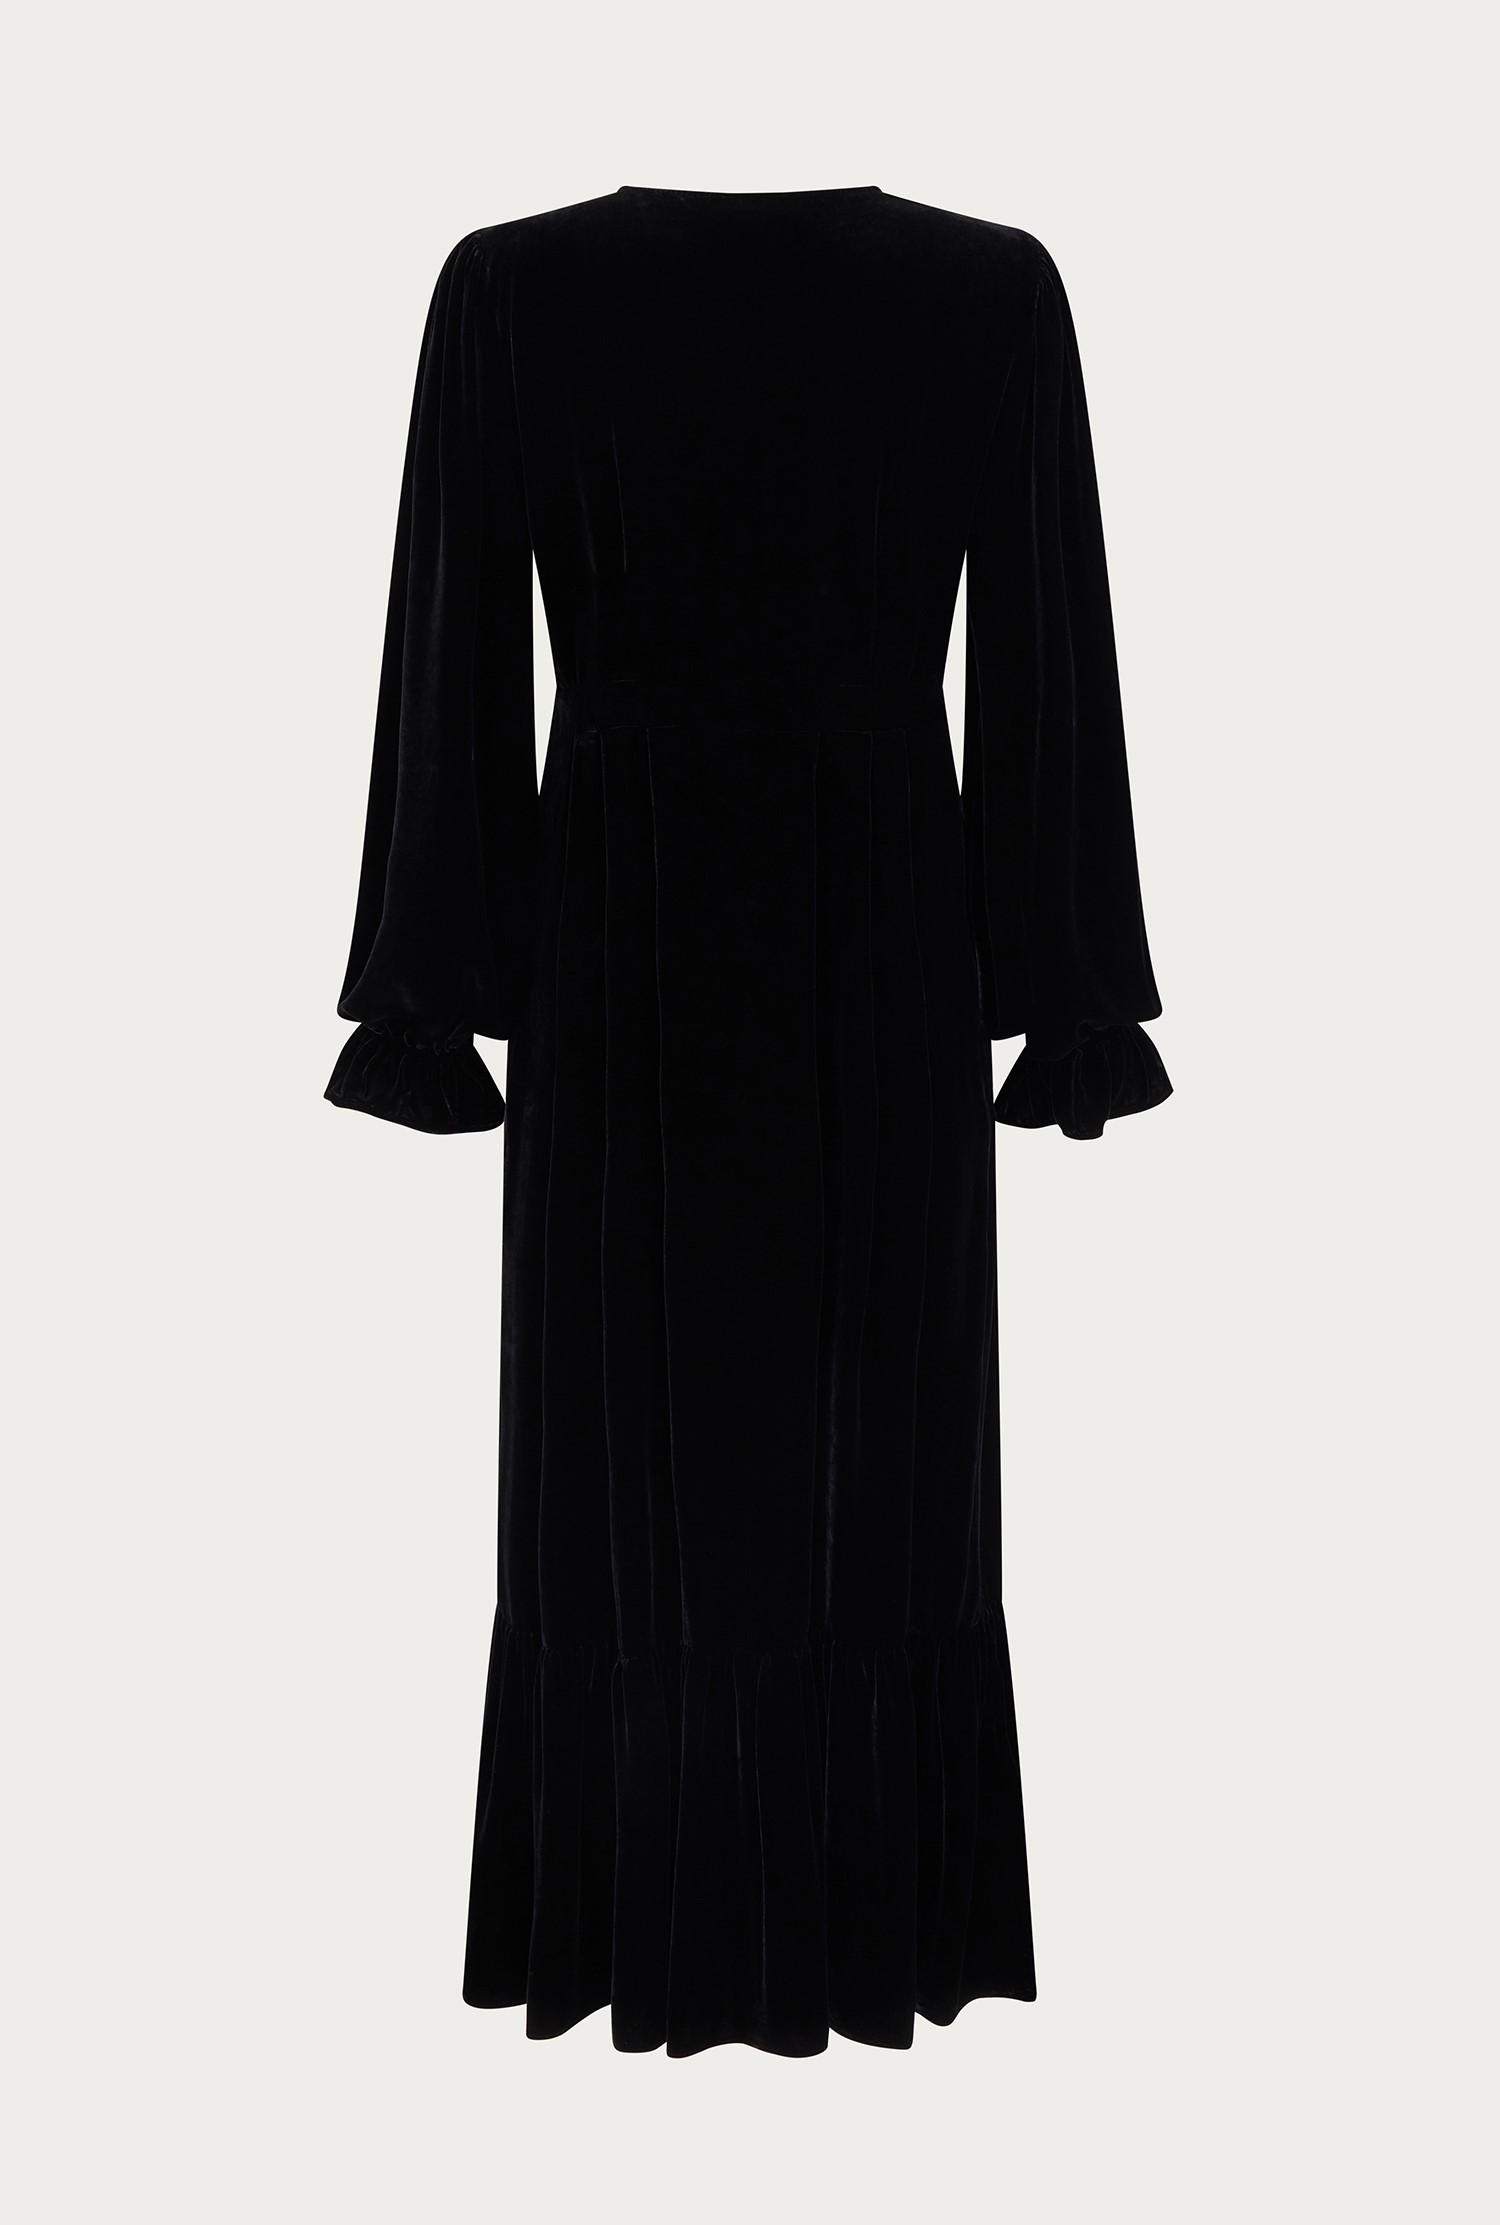 Sophia Black Velvet Midi Dress | Ghost London